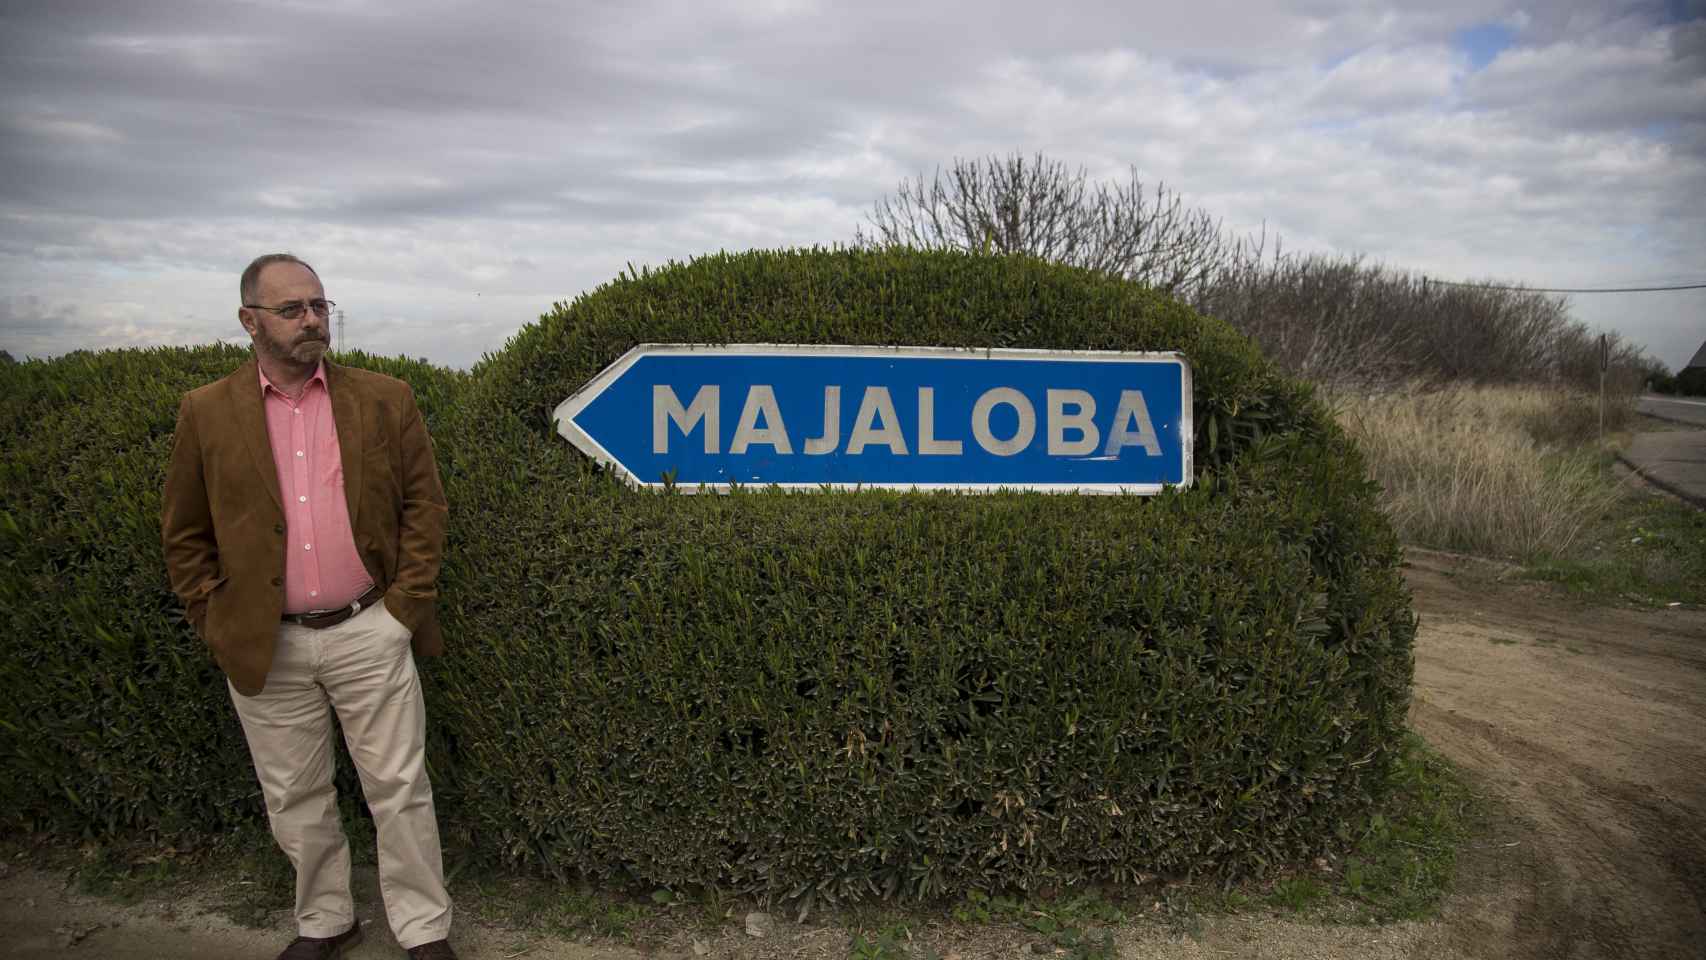 El padre de Marta delante de una señal que indica la entrada a la finca Majaloba.